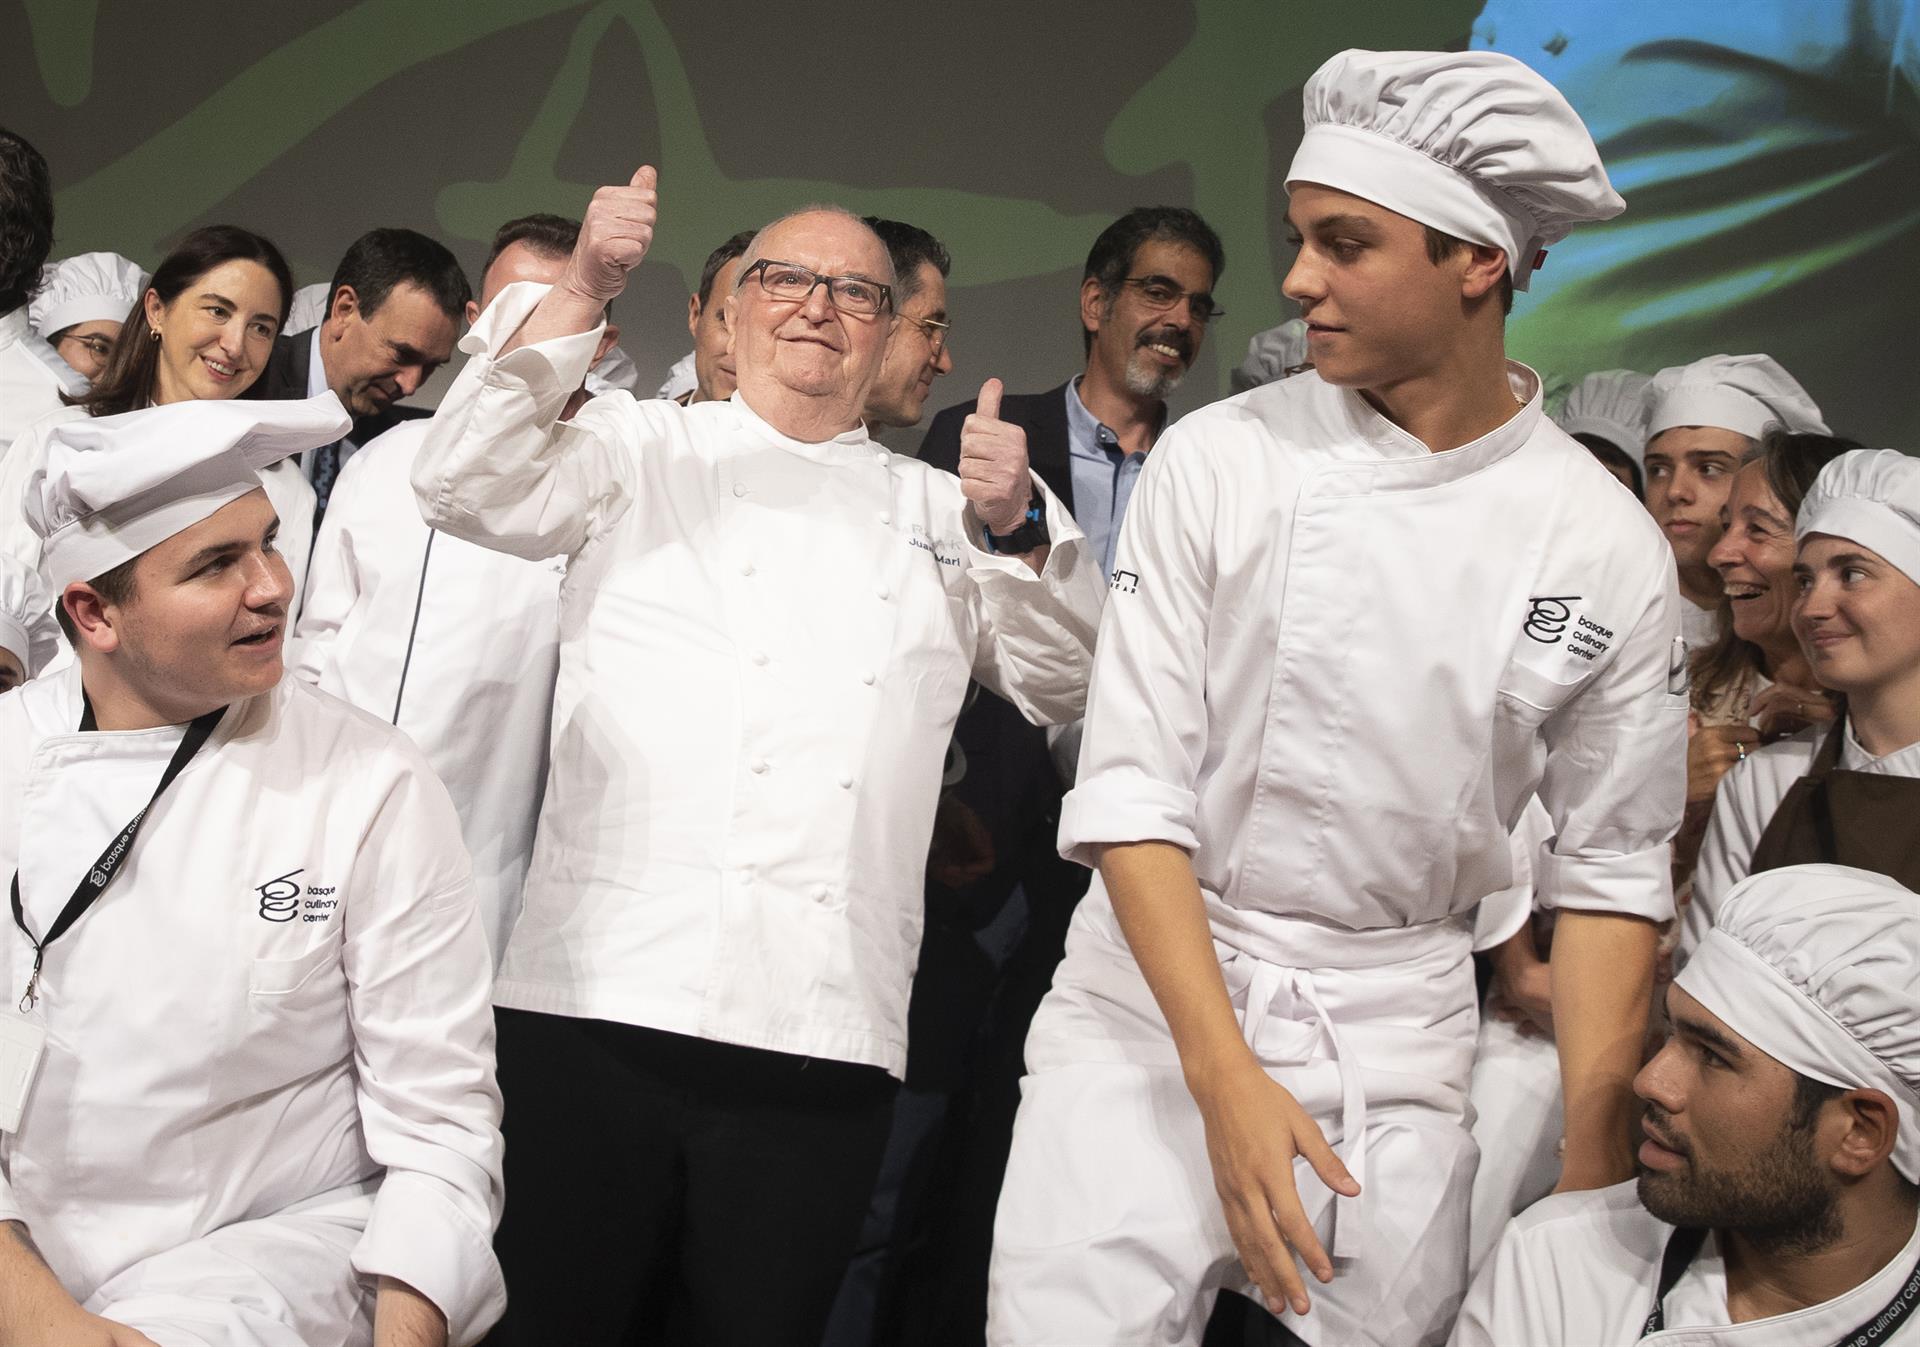 La gastronomía vasca ha homenajeado al cocinero Juan Mari Arzak (c), quien ha sido nombrado patrono de honor del Basque Culinary Center este martes, durante la celebración del primer gran evento organizado en San Sebastián por la plataforma "Mantala". EFE/ Javier Etxezarreta
